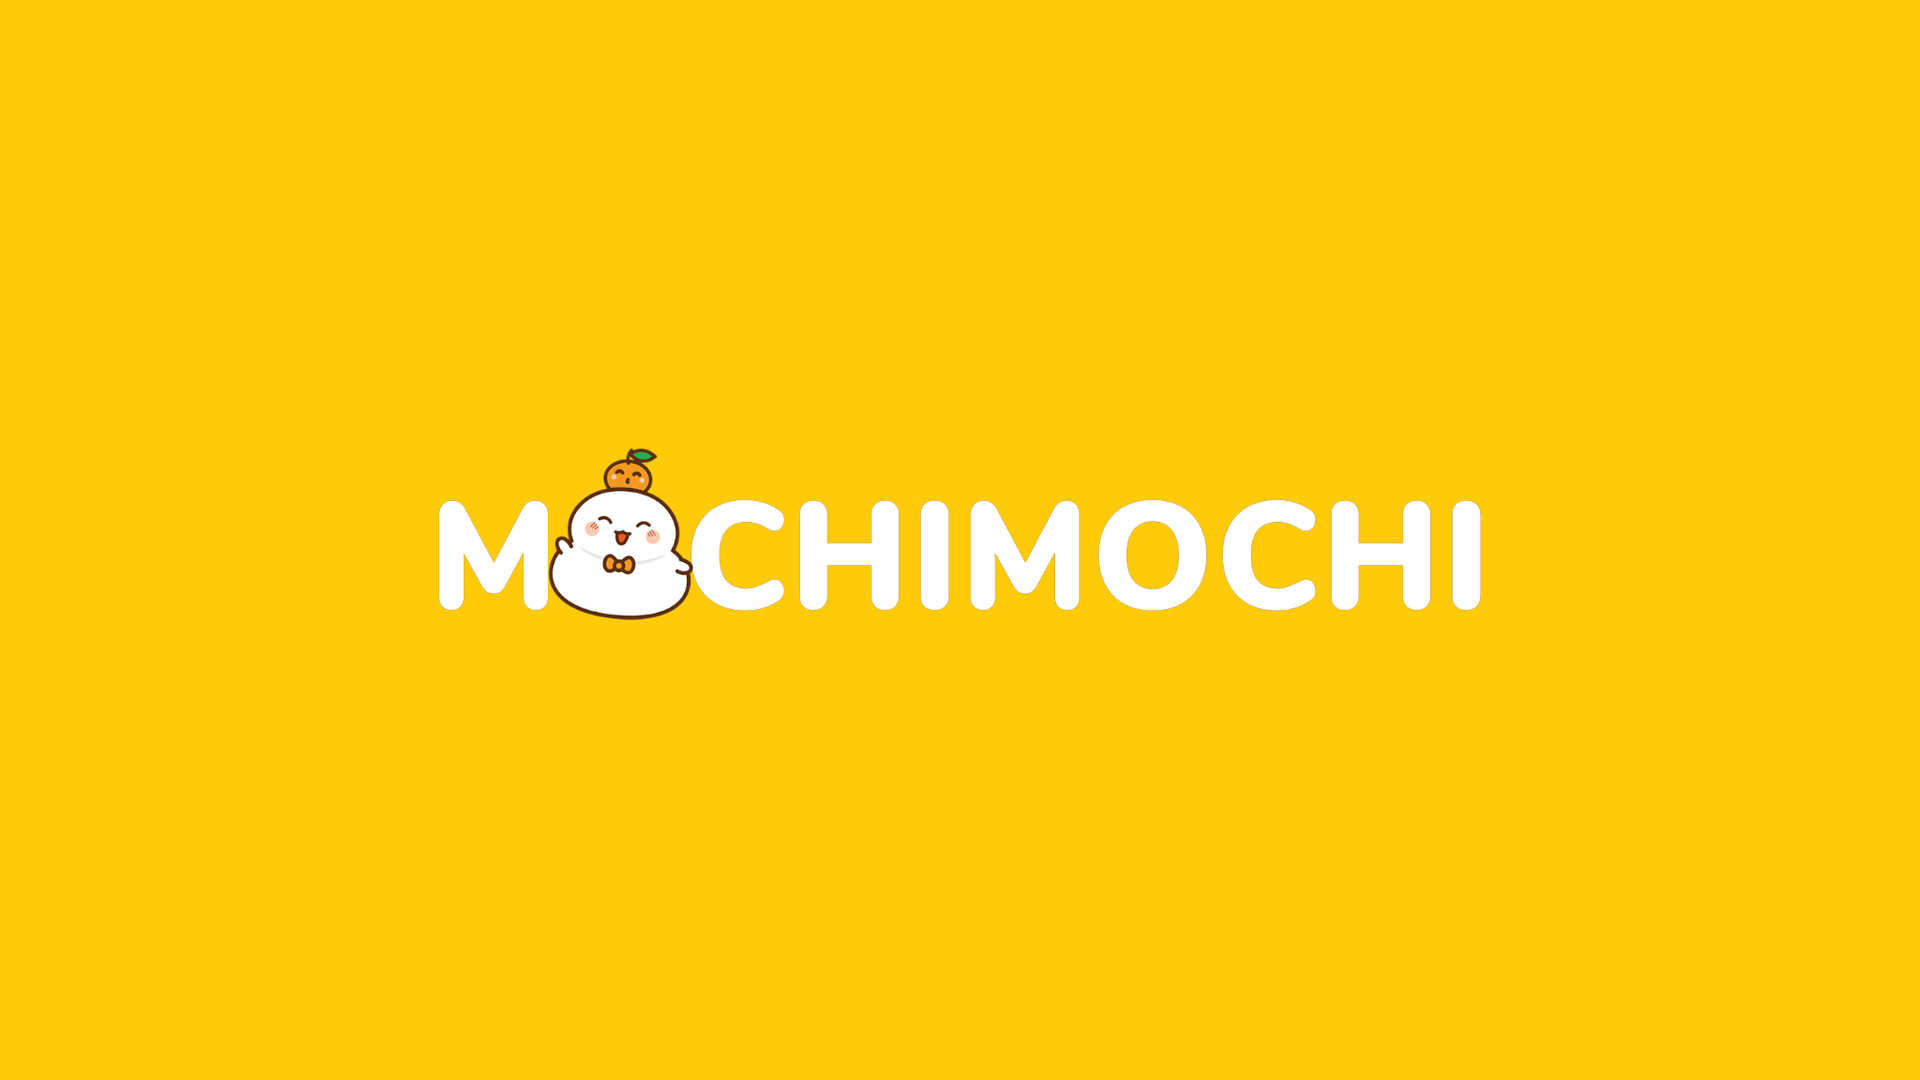 Mochimochi - Ghi Nhớ 1000 Từ Vựng Trong 1 Tháng